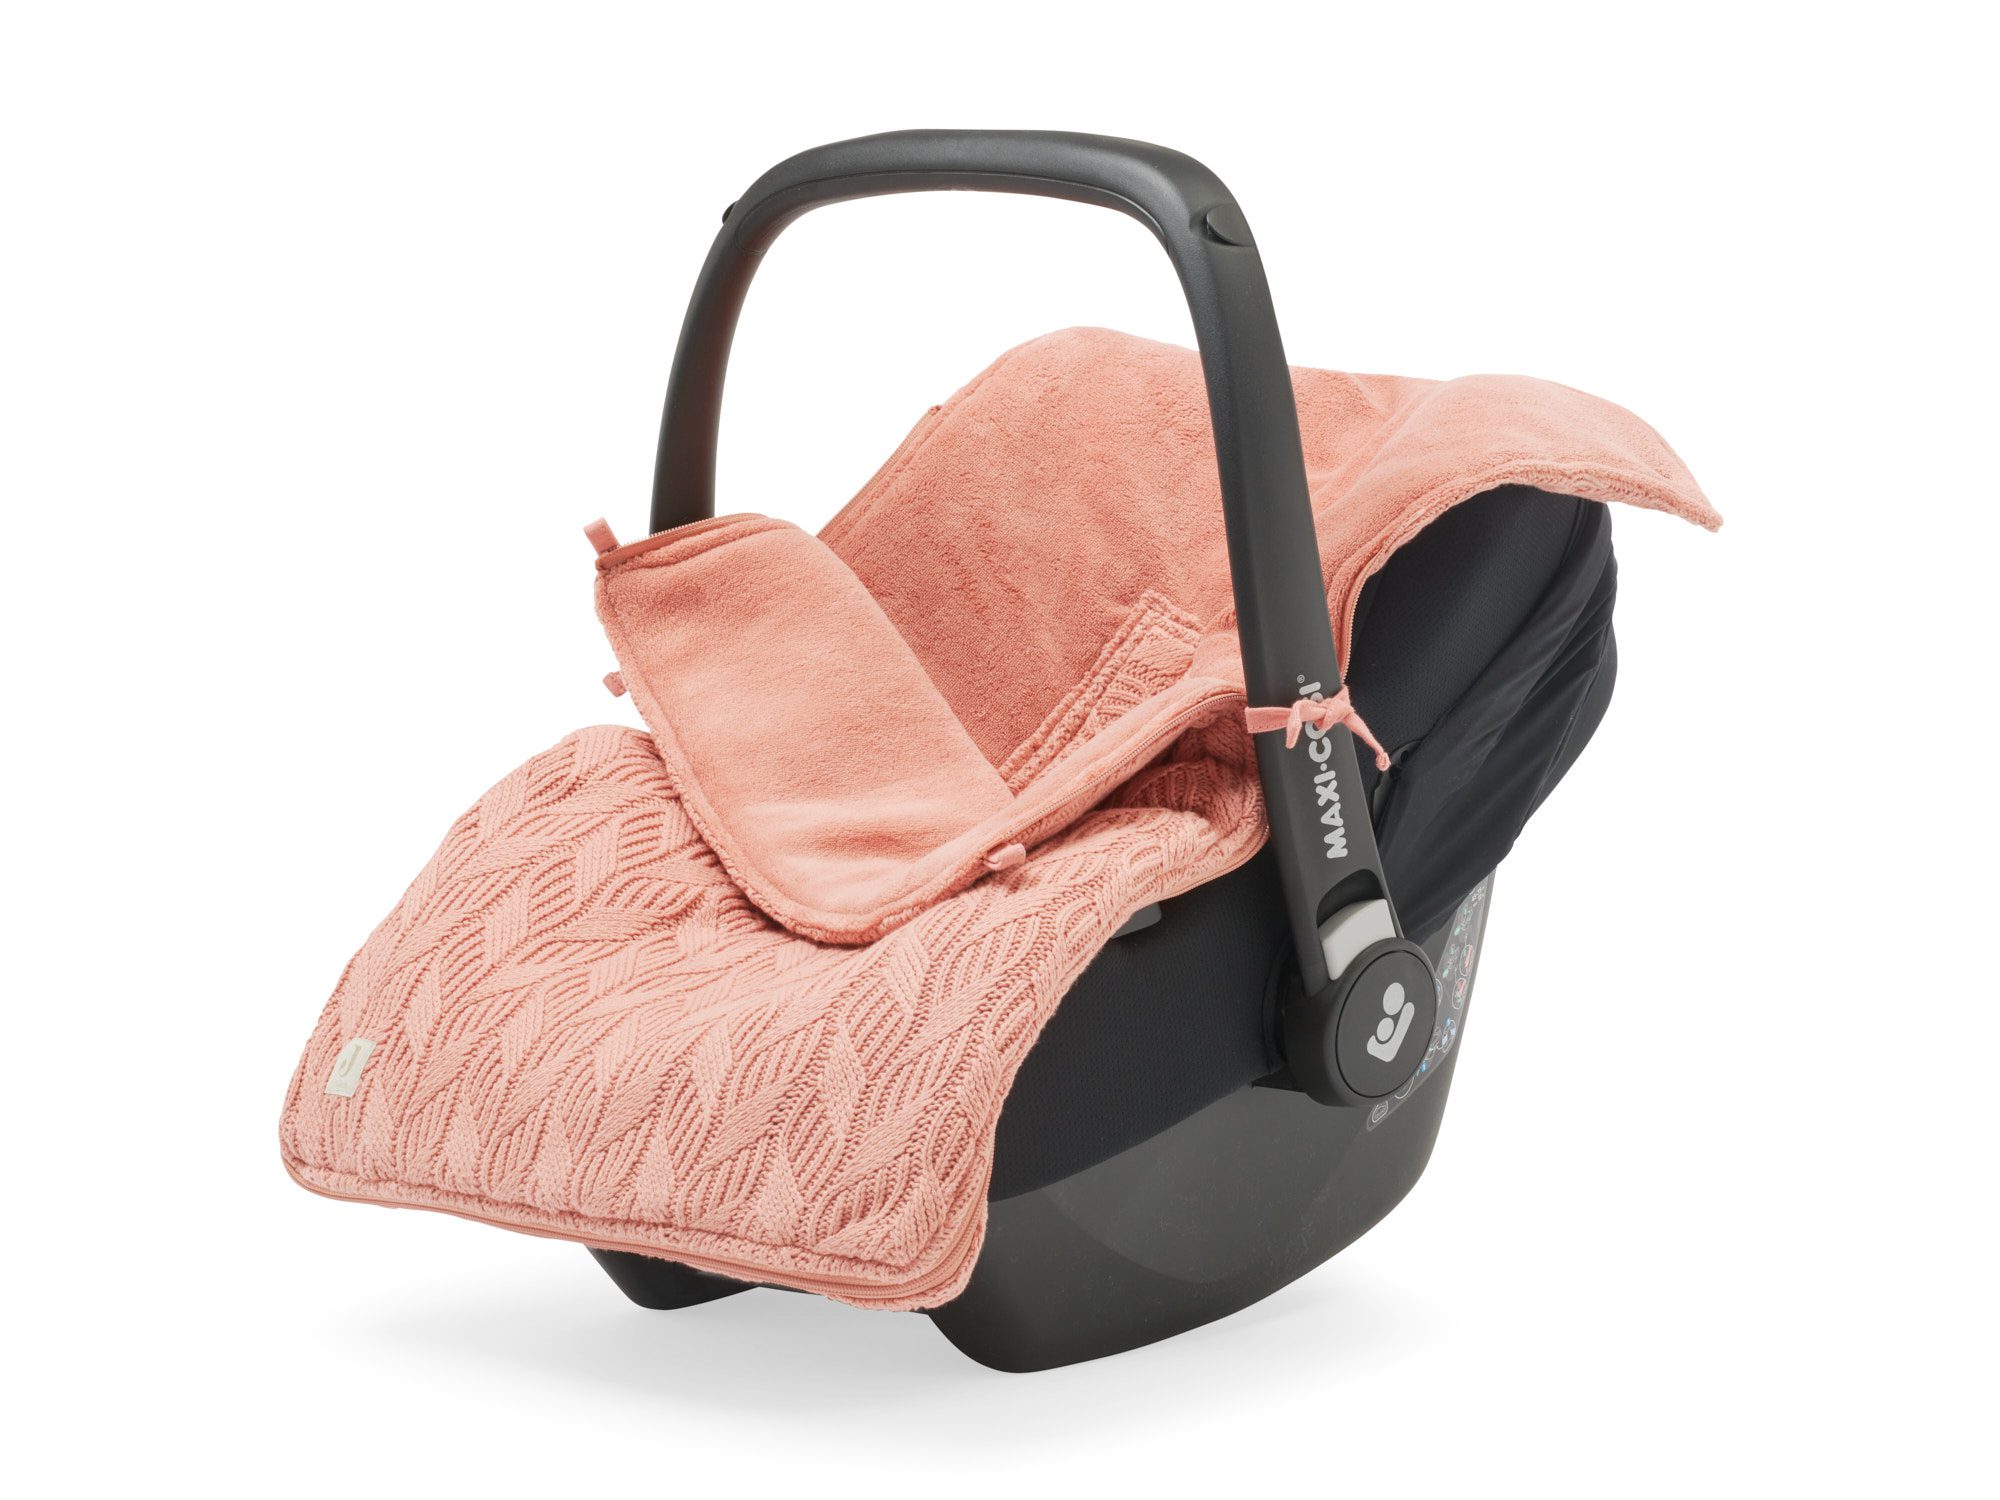 Voetenzak voor Autostoel & Kinderwagen - Spring Knit - Rosewood